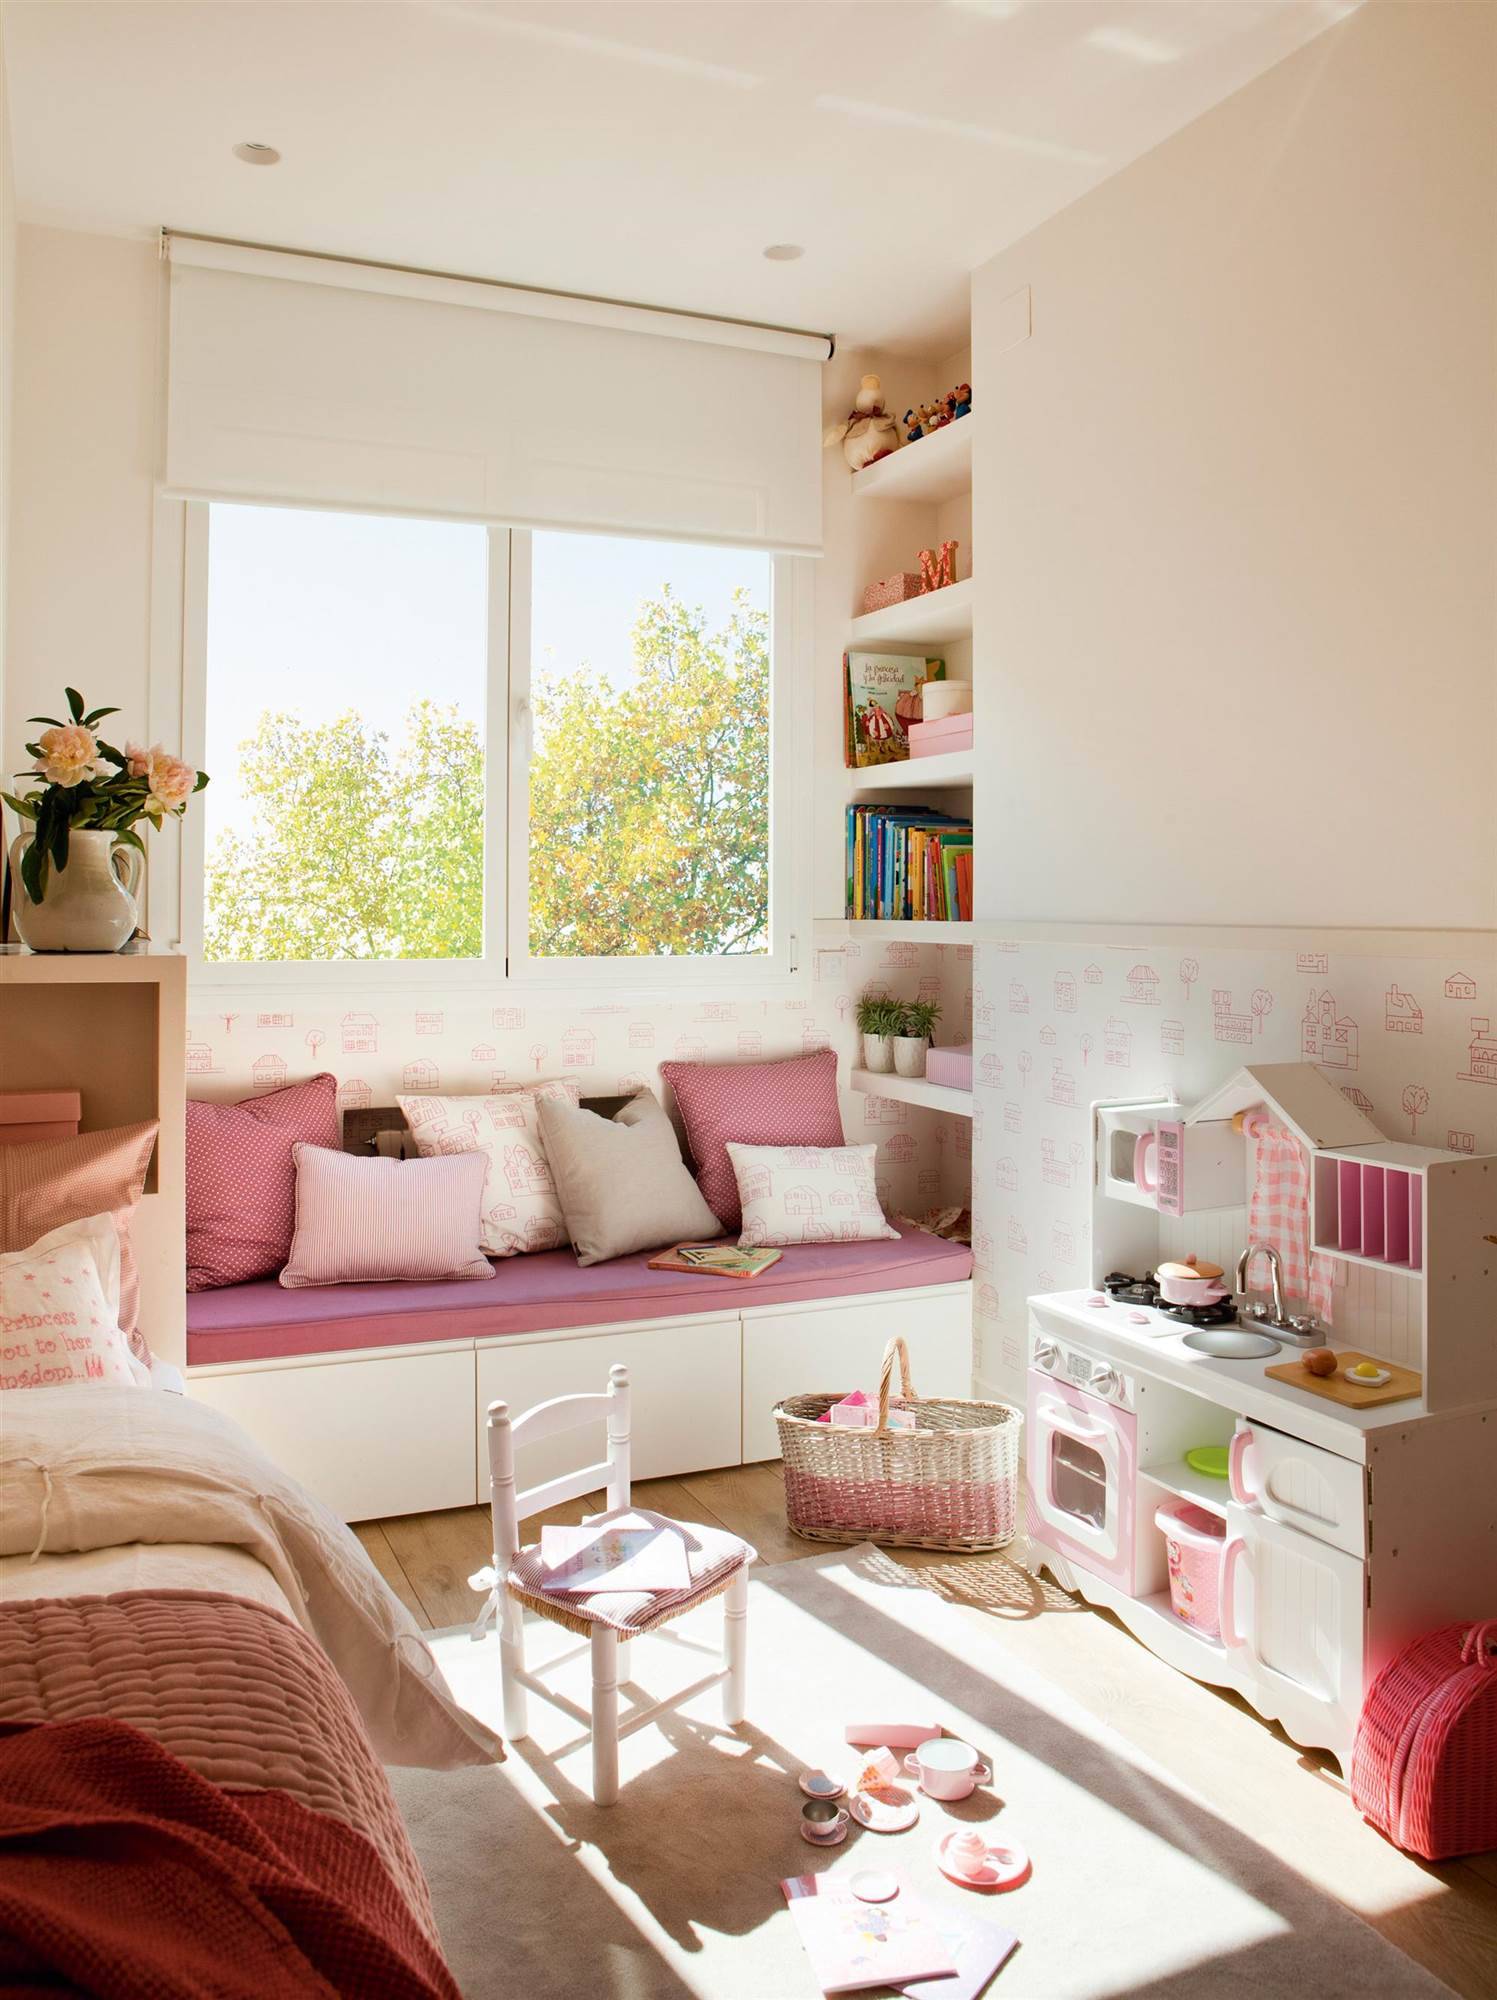 Habitación infantil en rosa con juguetes, arrimadero con papel pintado y banco bajo la ventana.